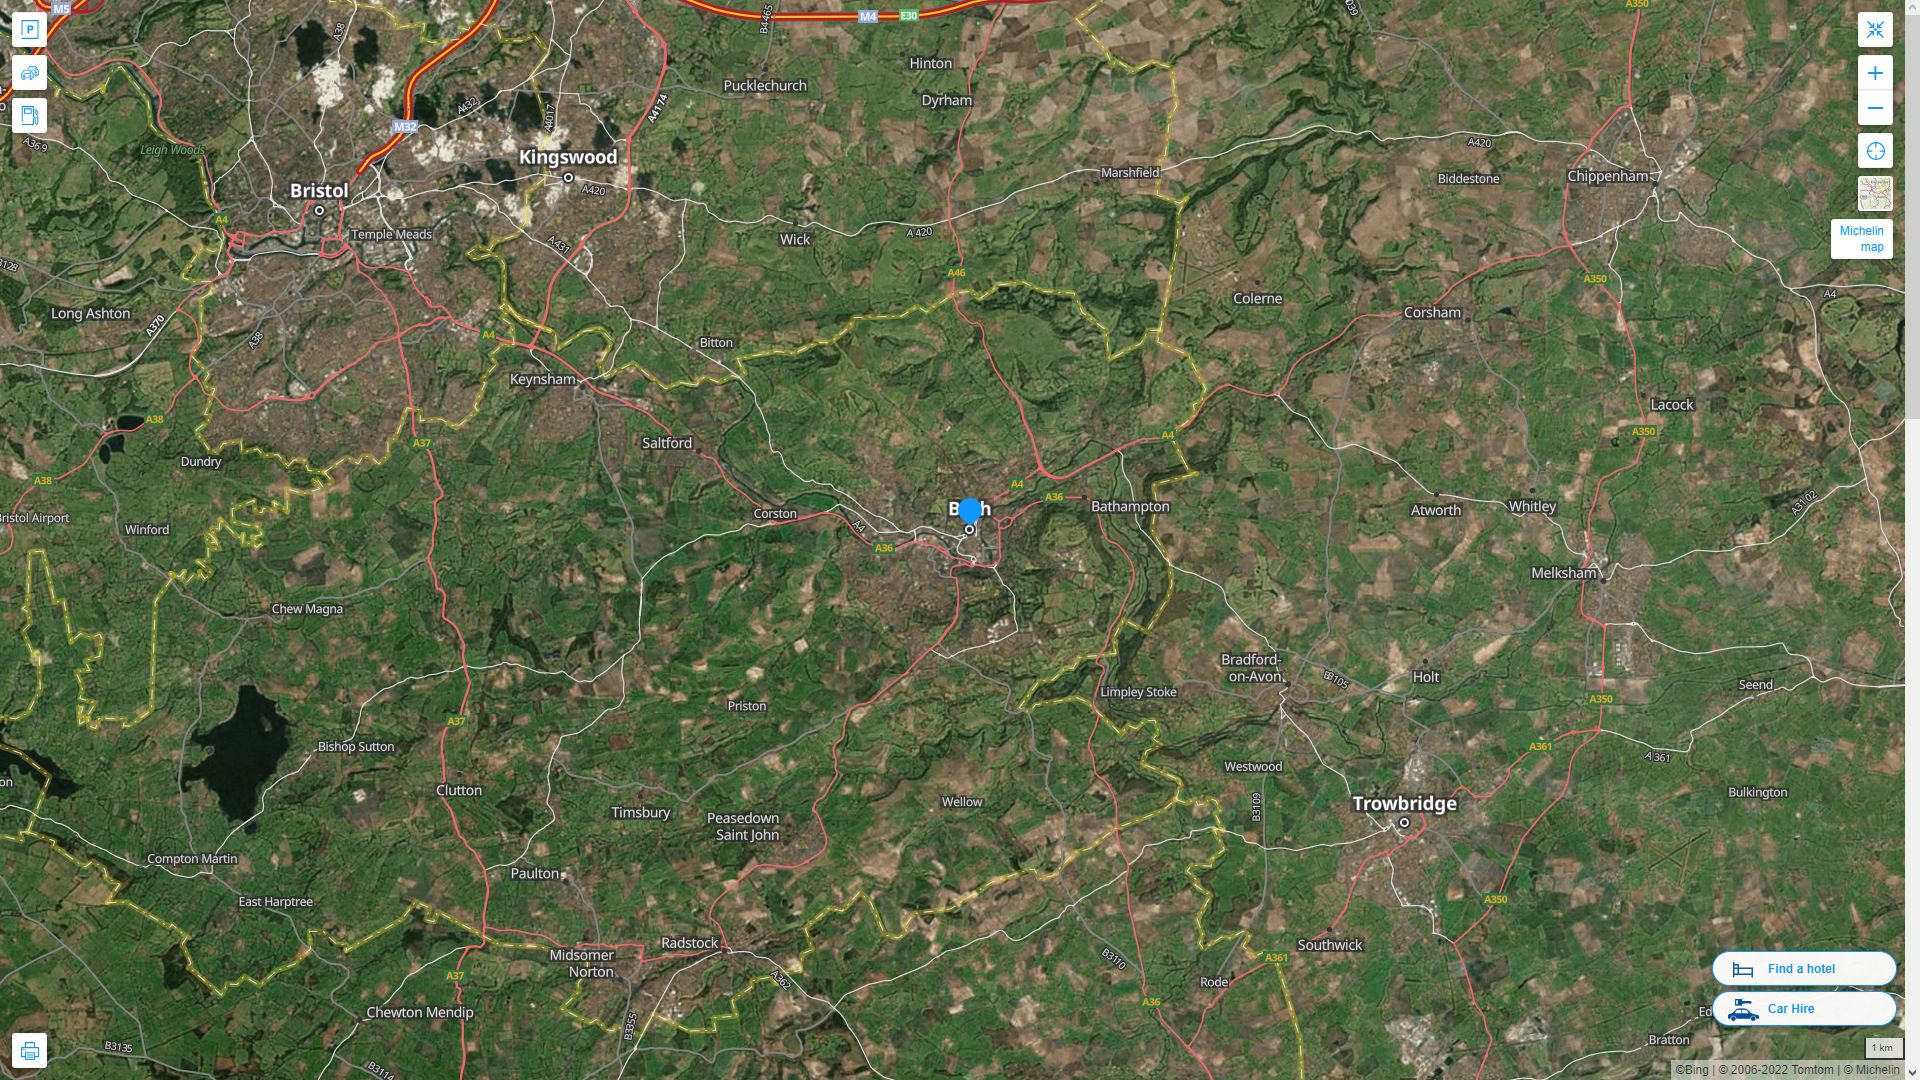 Bath Royaume Uni Autoroute et carte routiere avec vue satellite